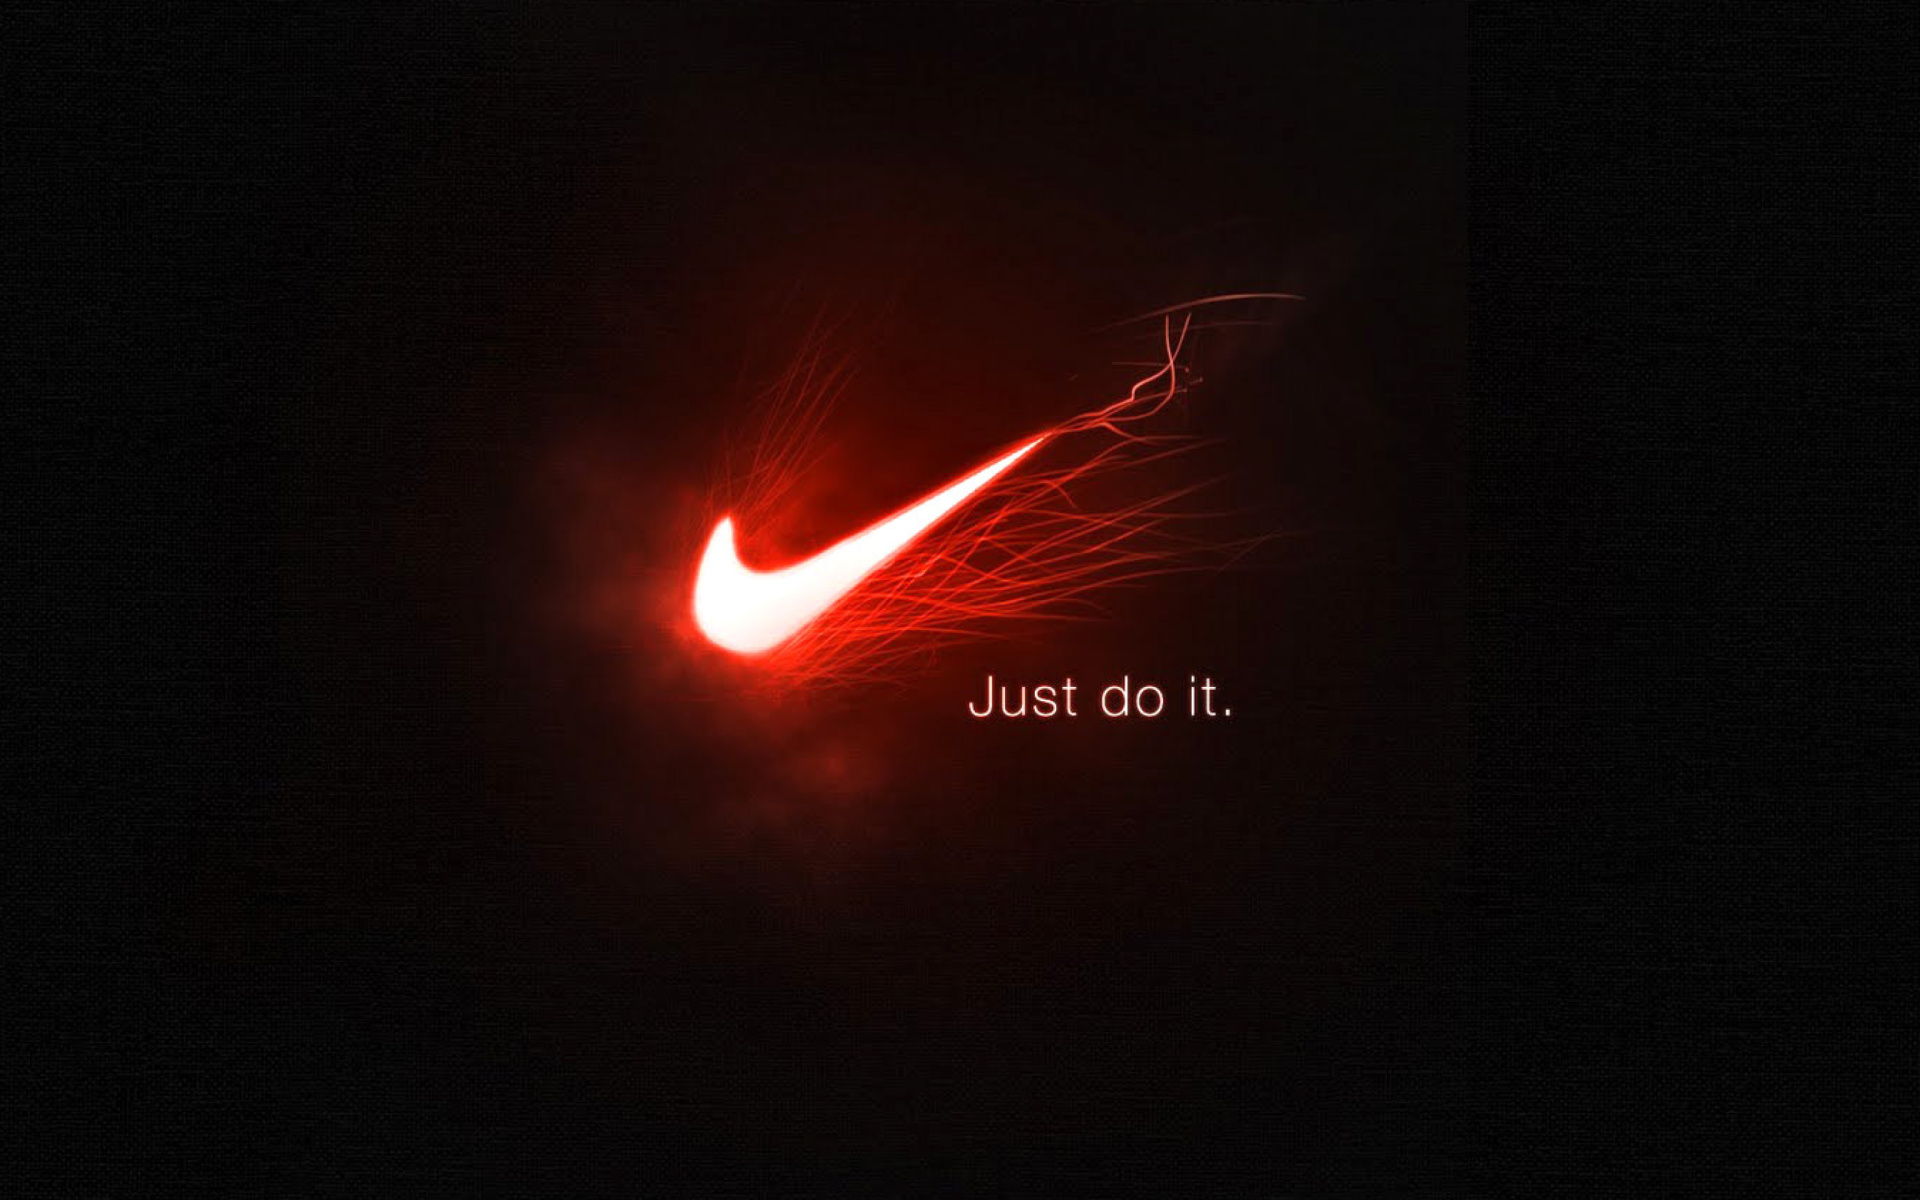 Nike Advertising Slogan Just Do It screenshot #1 1920x1200